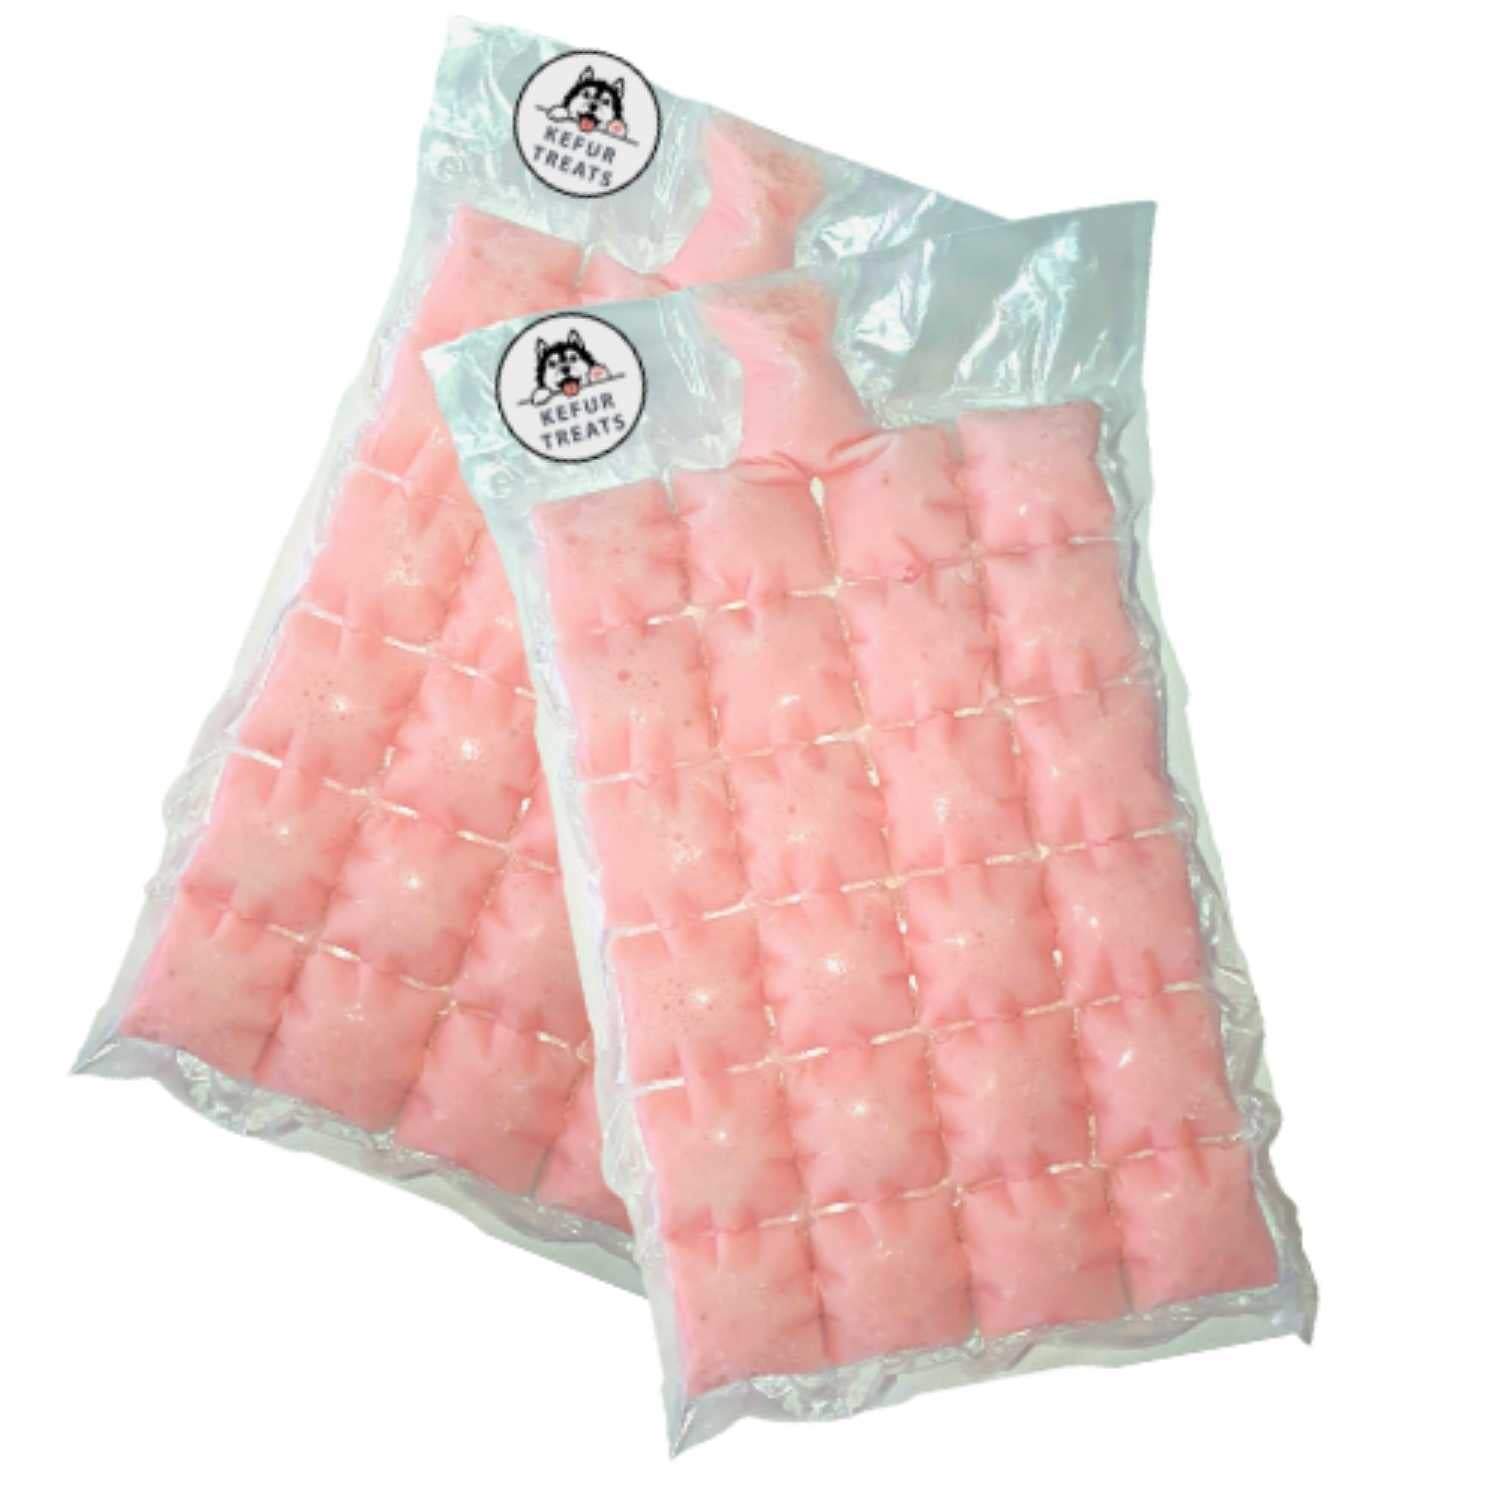 KEFUR TREATS - STRAWBERRY Goat Milk Kefir Frozen Pack (24 Cubes) - Pet Treats